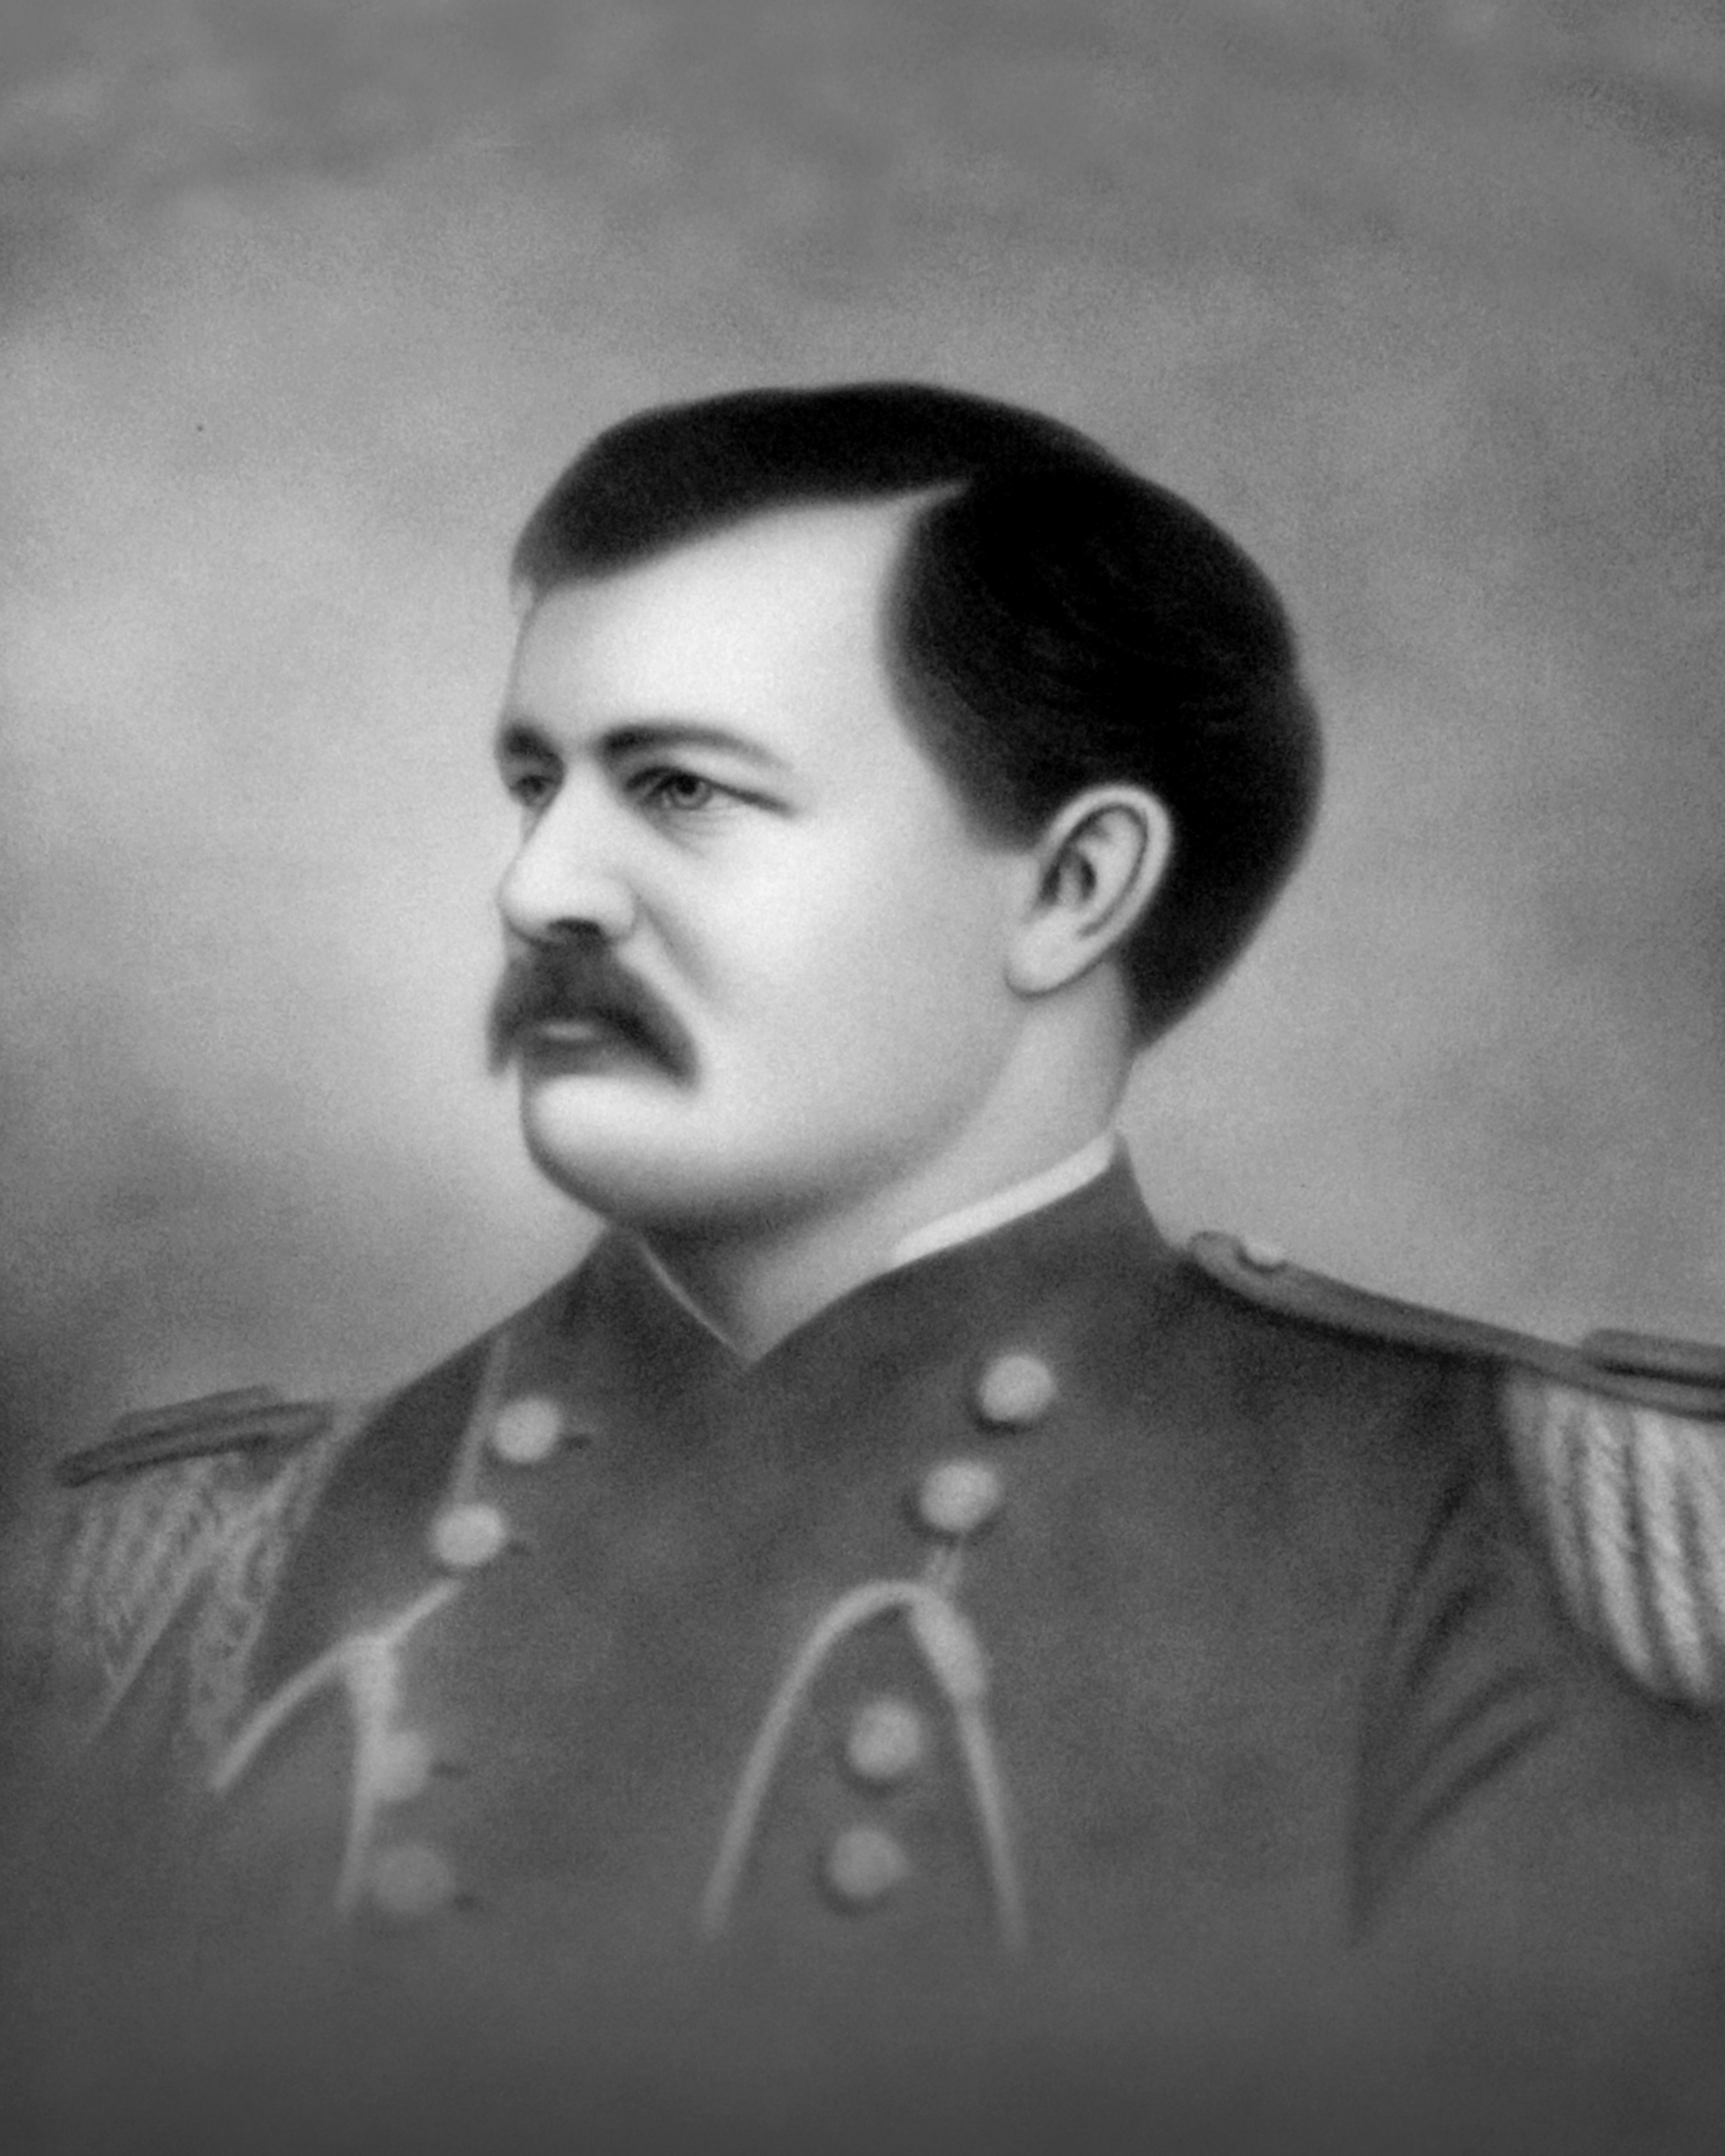 Brigadier General Woodford H. Mabry